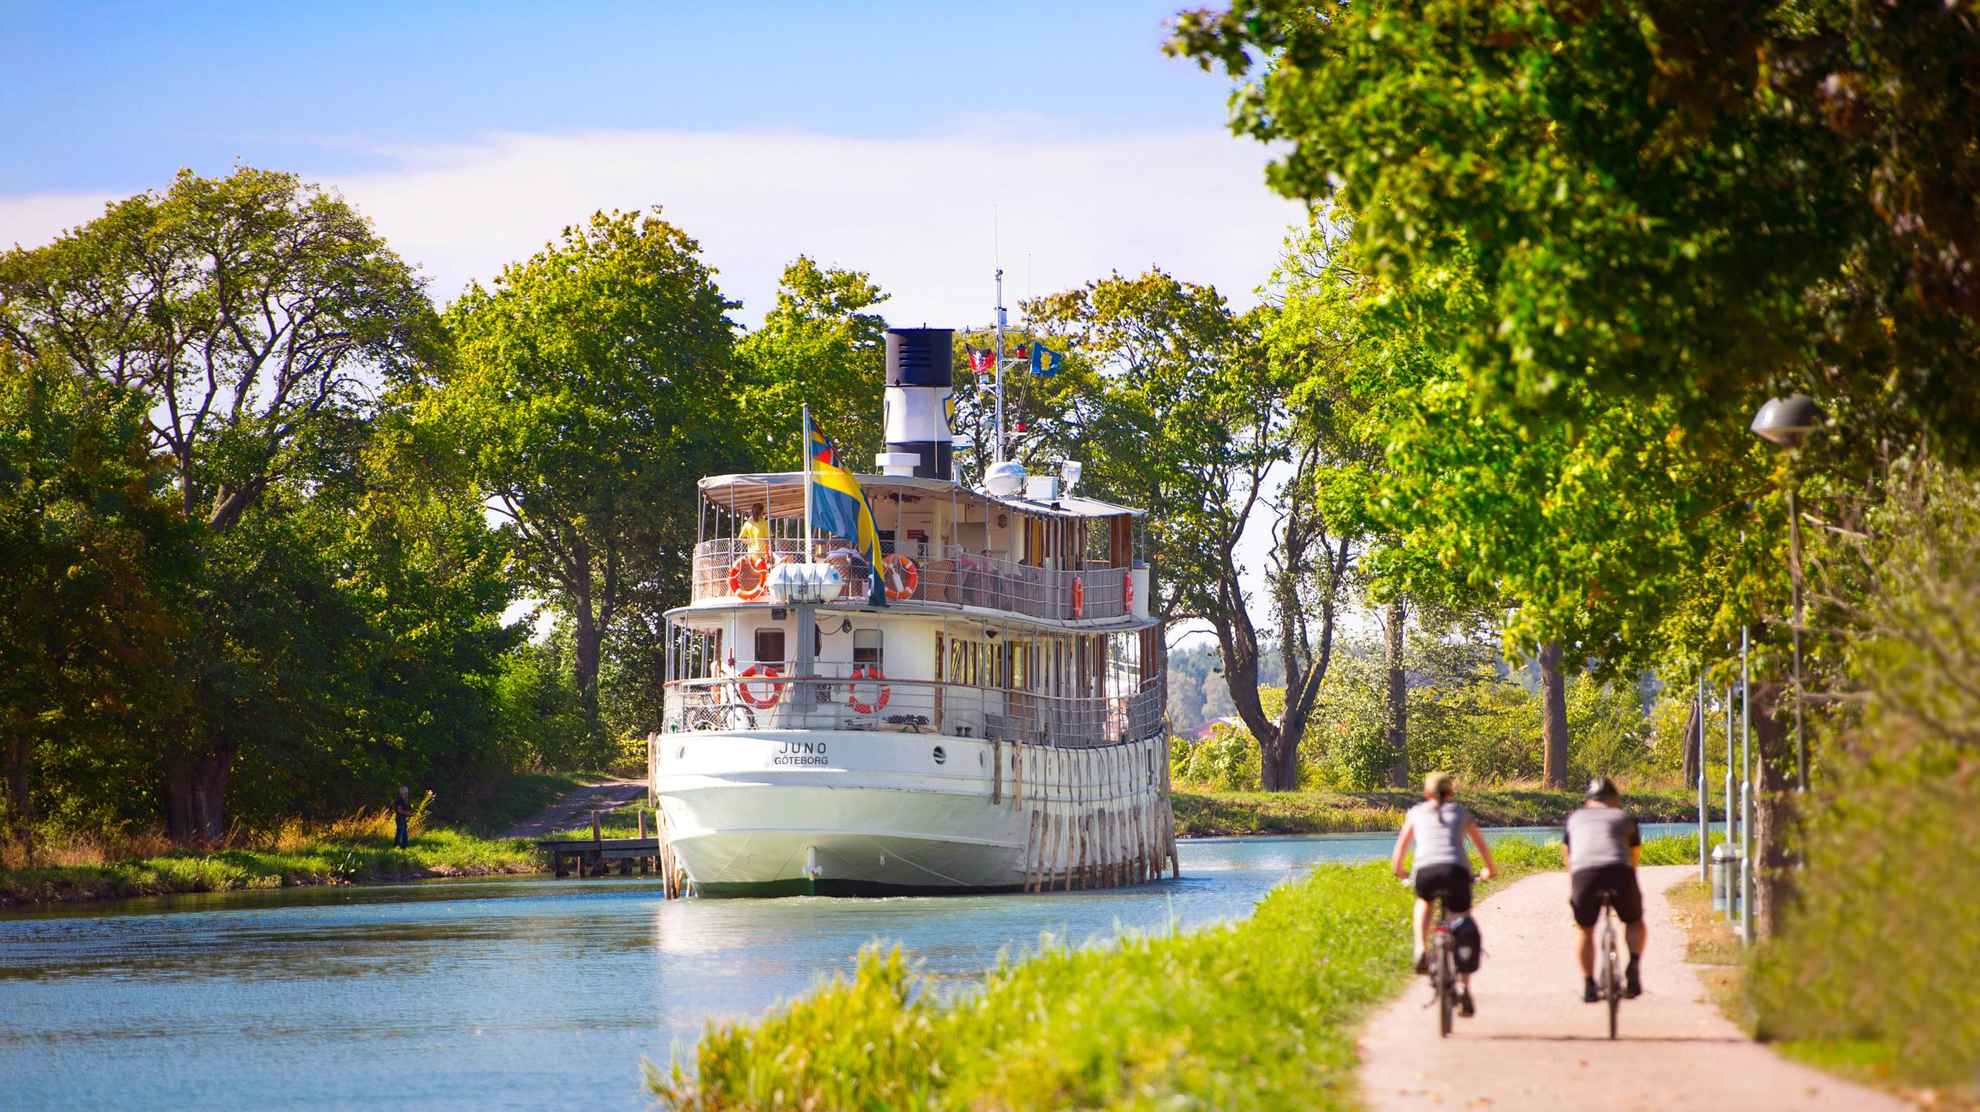 Het is zomer en twee mensen fietsen langs het water van het Götakanaal. Een boot vaart langs het kanaal.